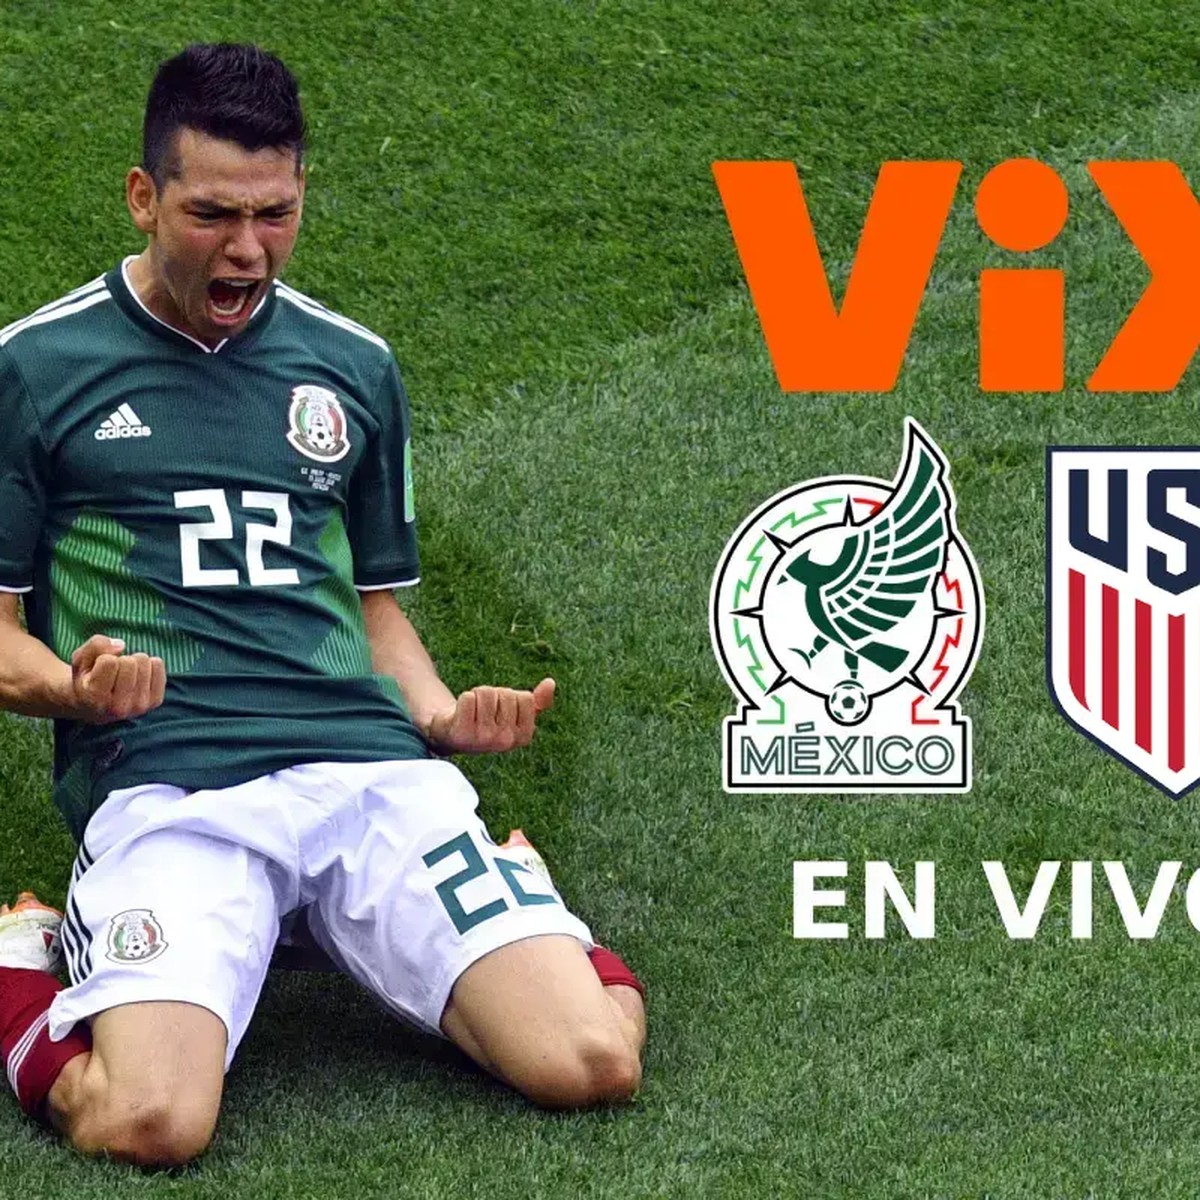 ViX: TV, Deportes y Noticias - Apps on Google Play